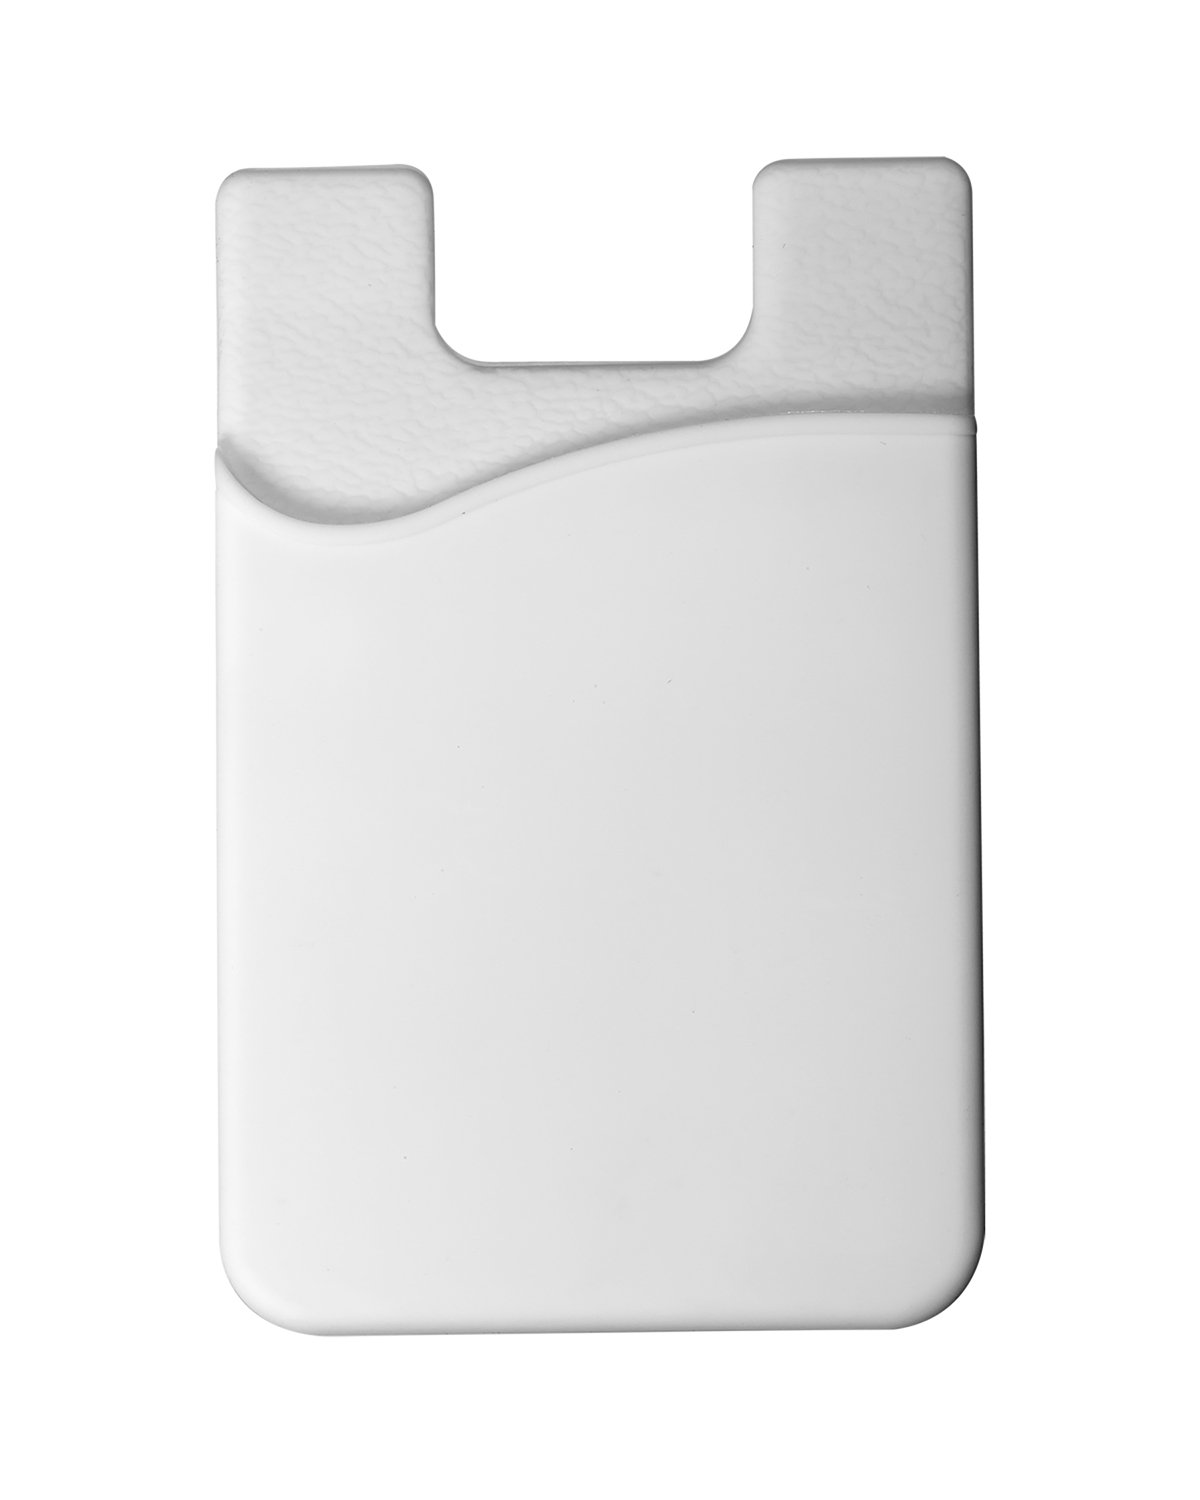 Prime Line Econo Silicone Mobile Device Pocket white 